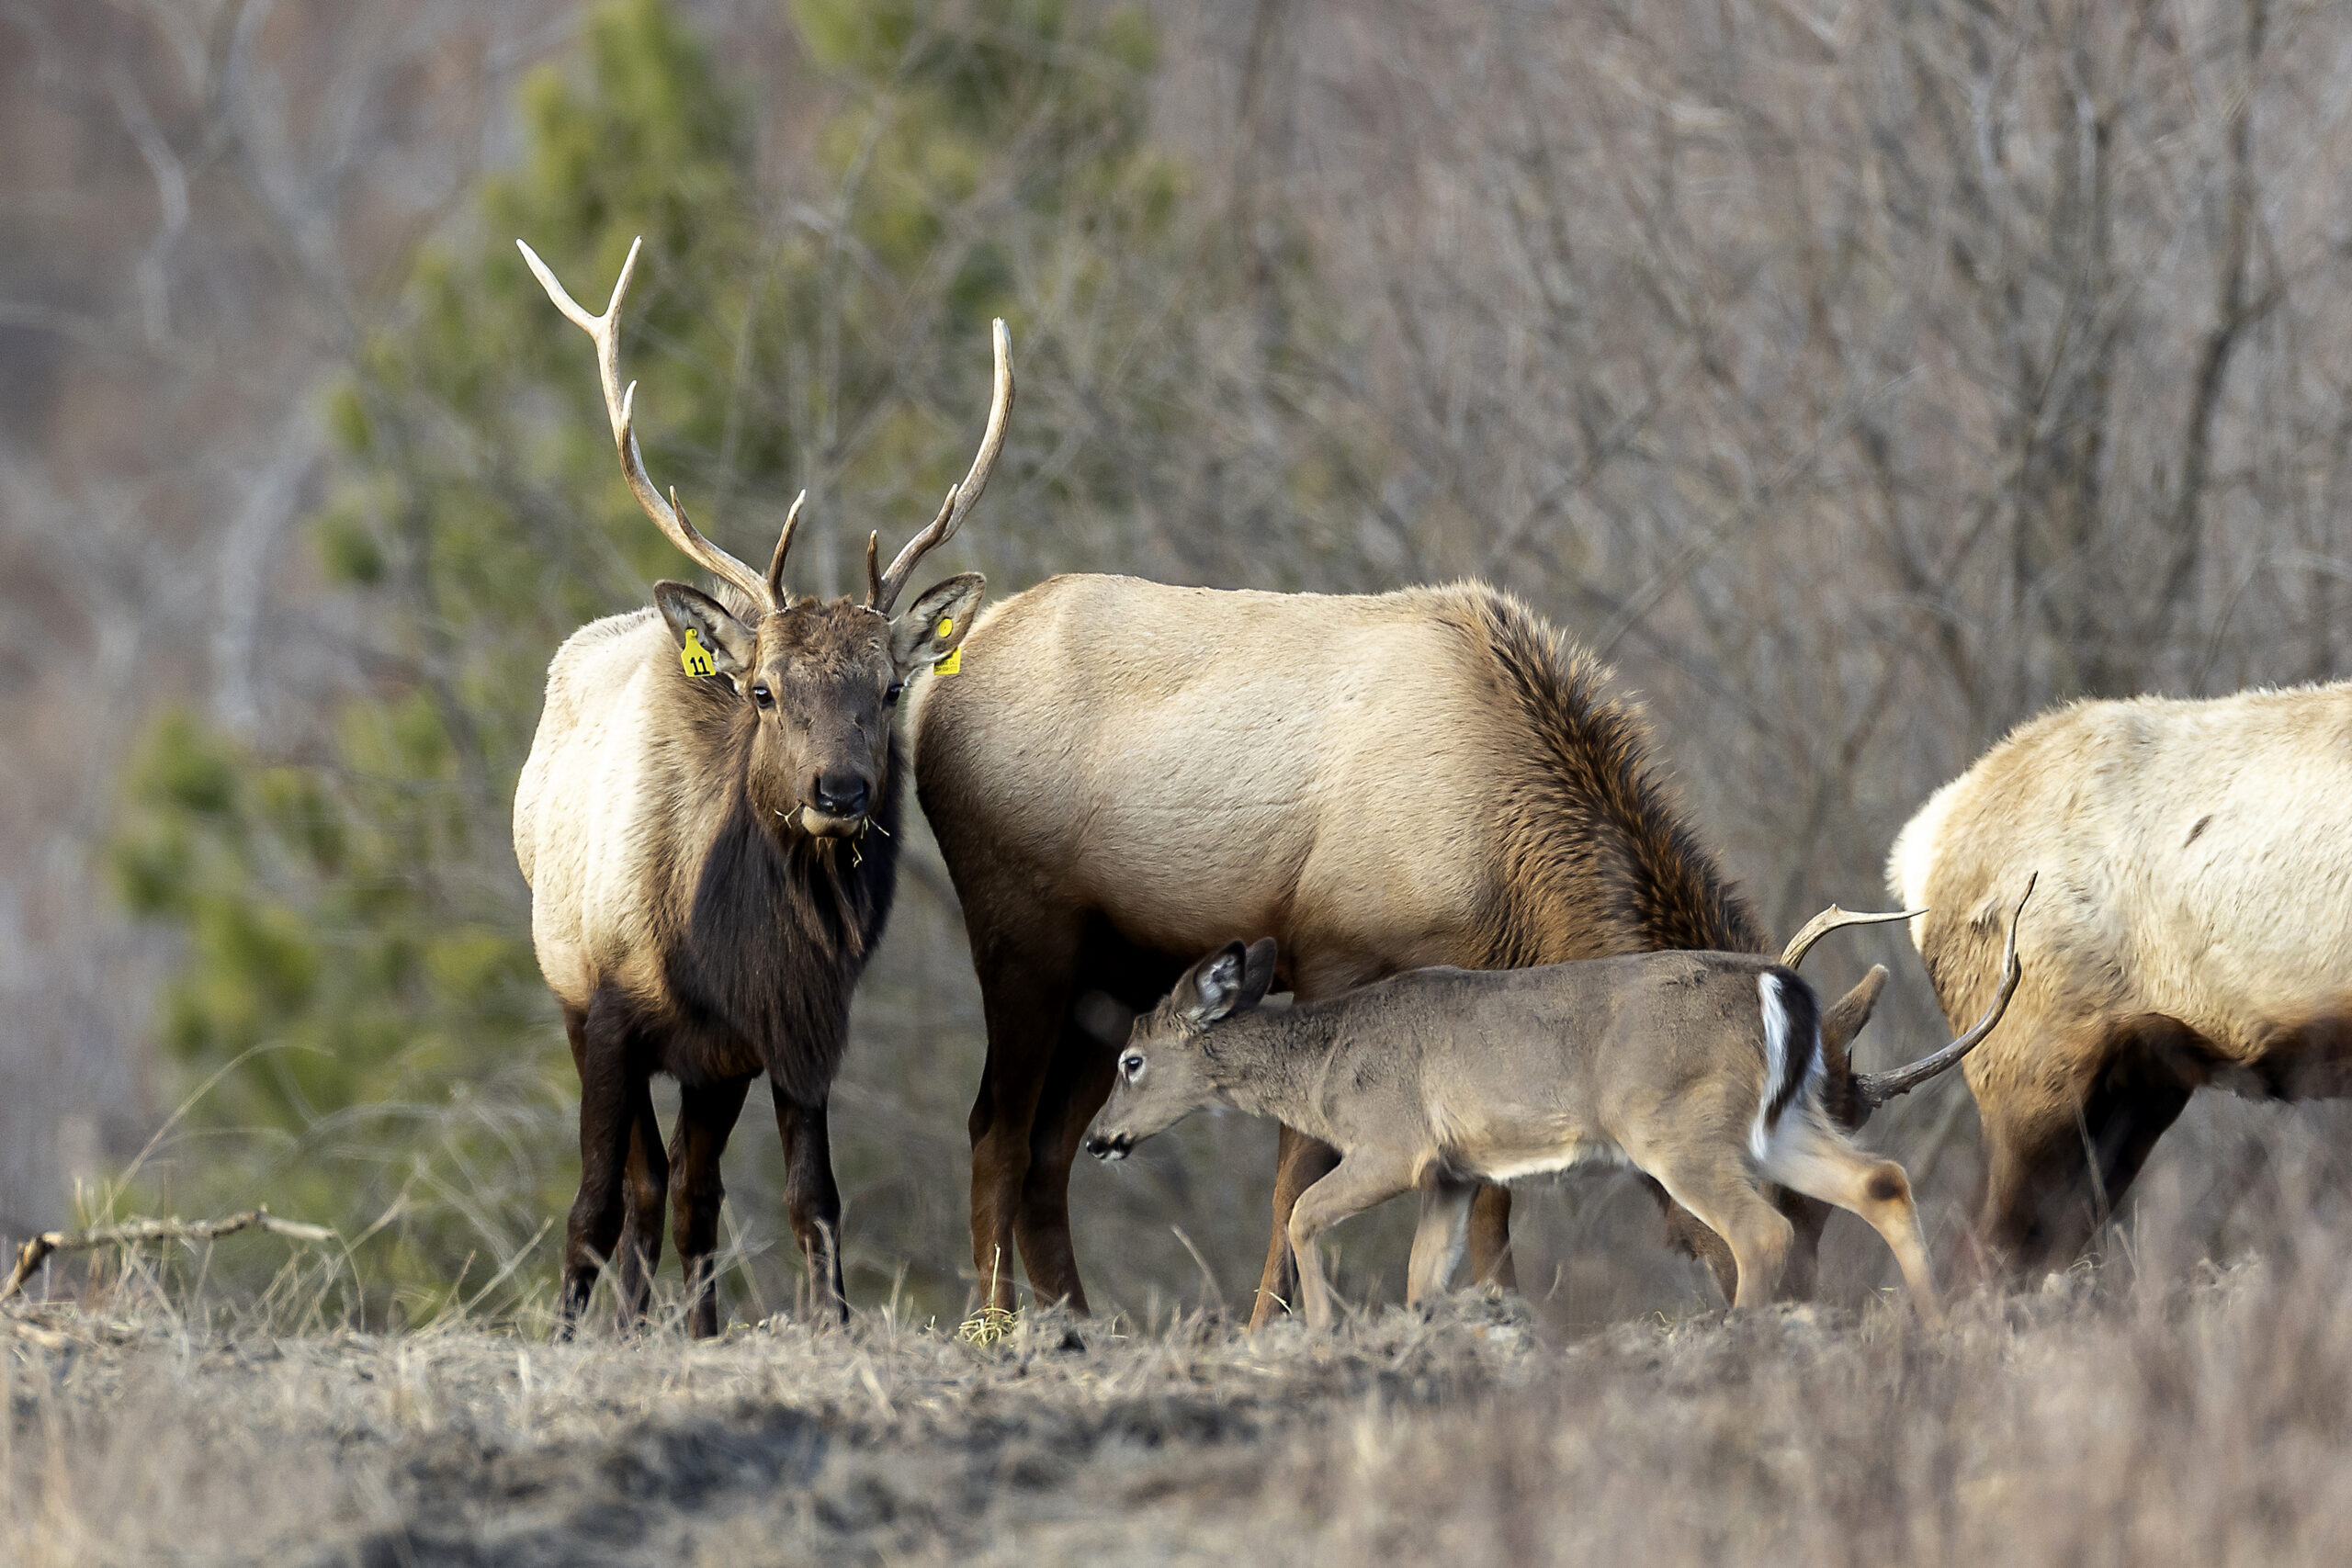 Tagged elk in the reintroduced herd in West Virginia.